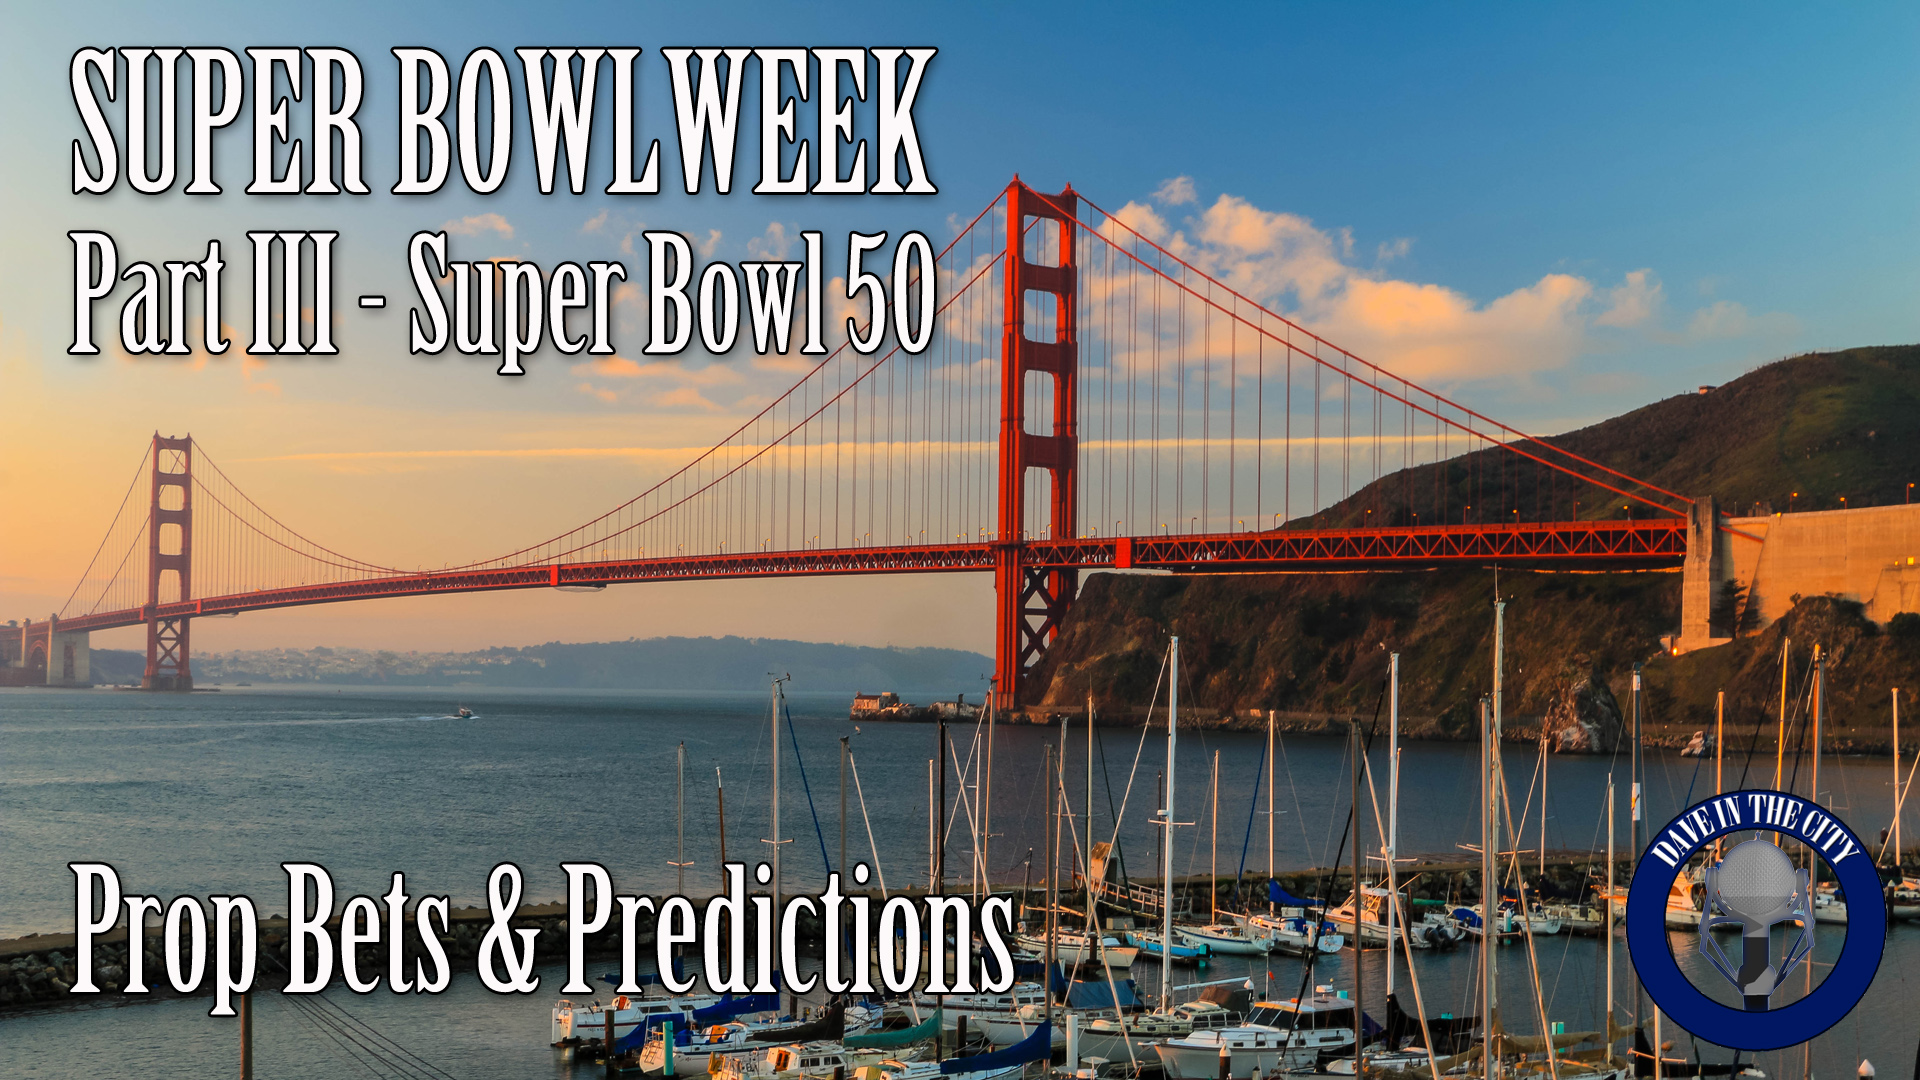 Podcast: Super Bowl Week pt III: Prop Bets & Predictions (02-03-16)